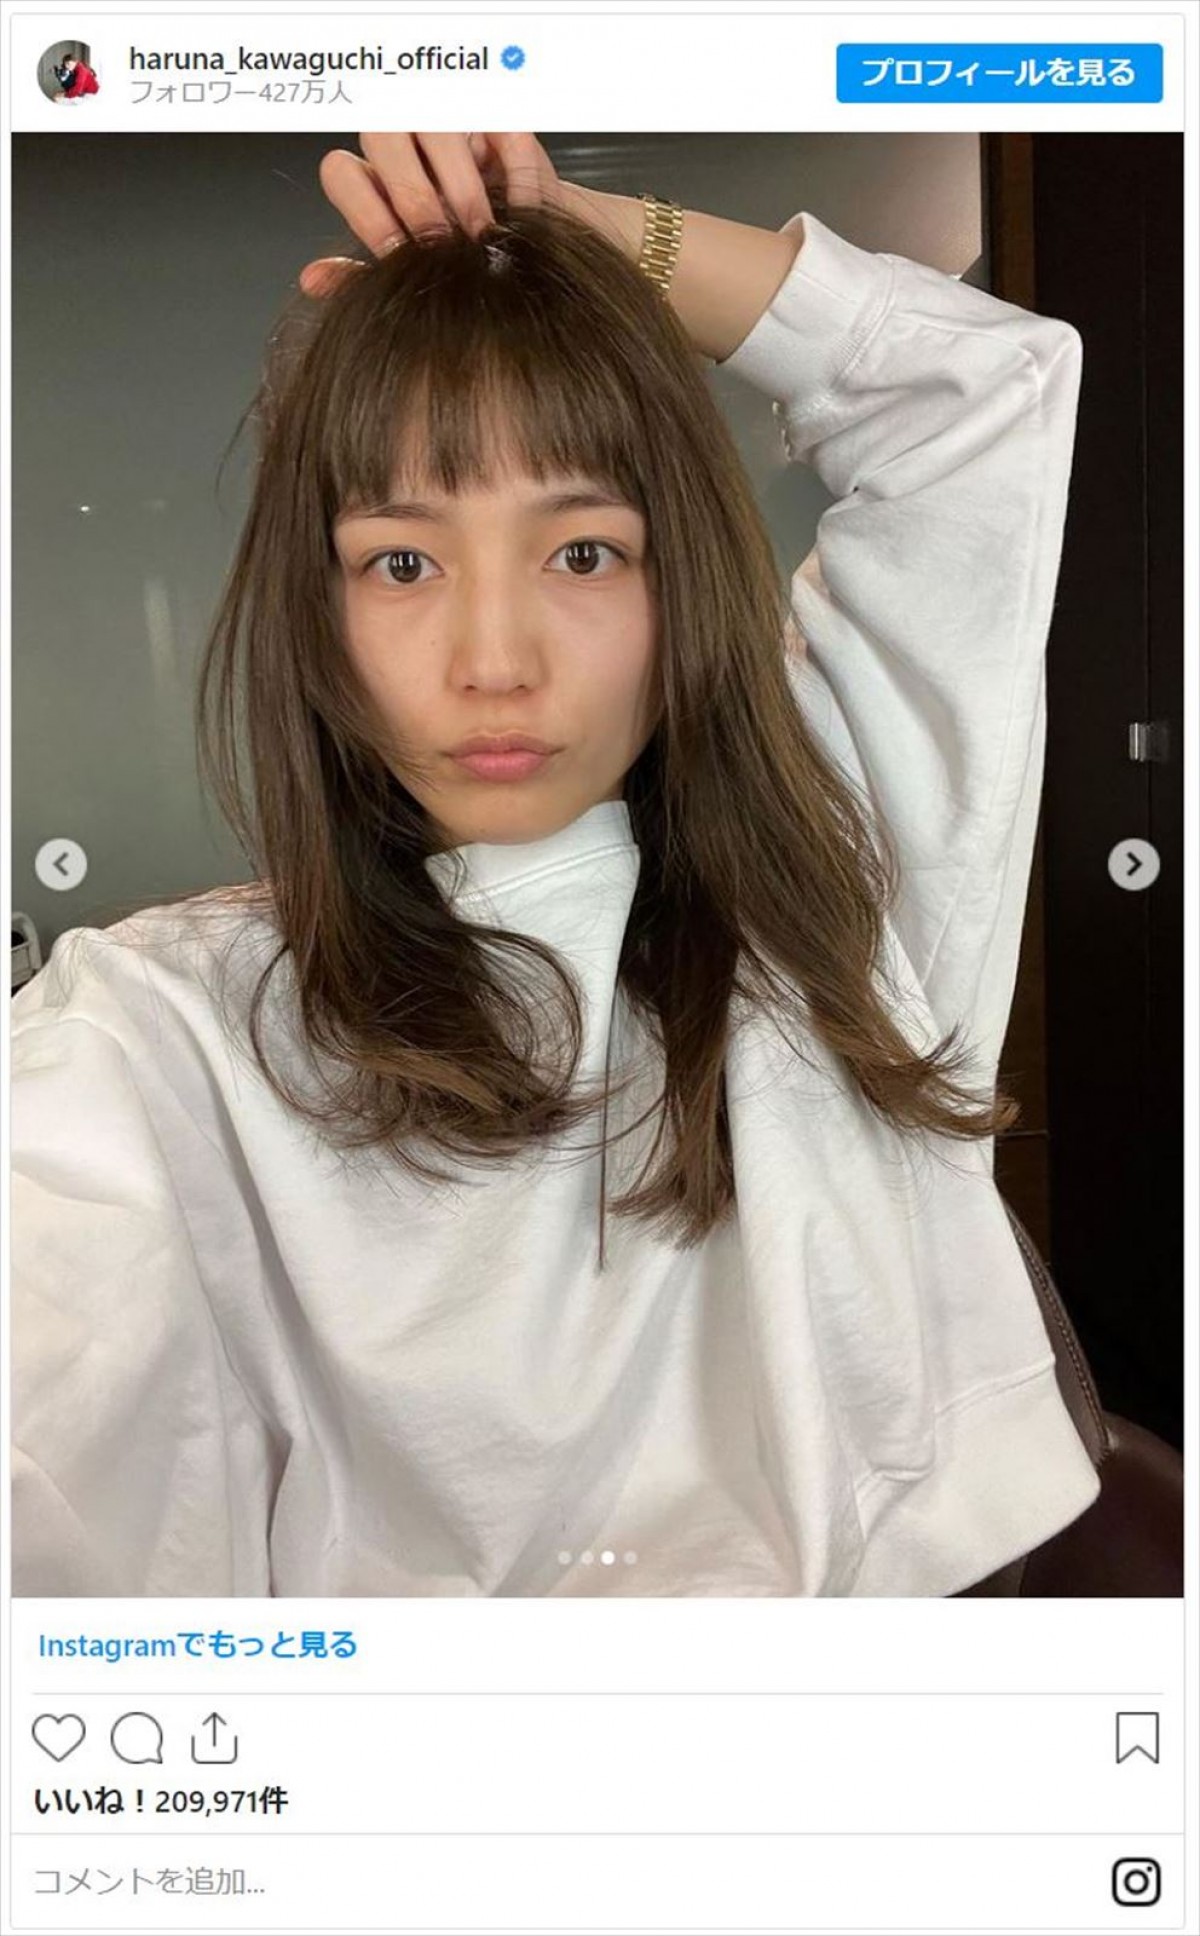 川口春奈「new hair」オン眉パッツン前髪で印象一新「破壊力えげつない」「似合いすぎ」の声